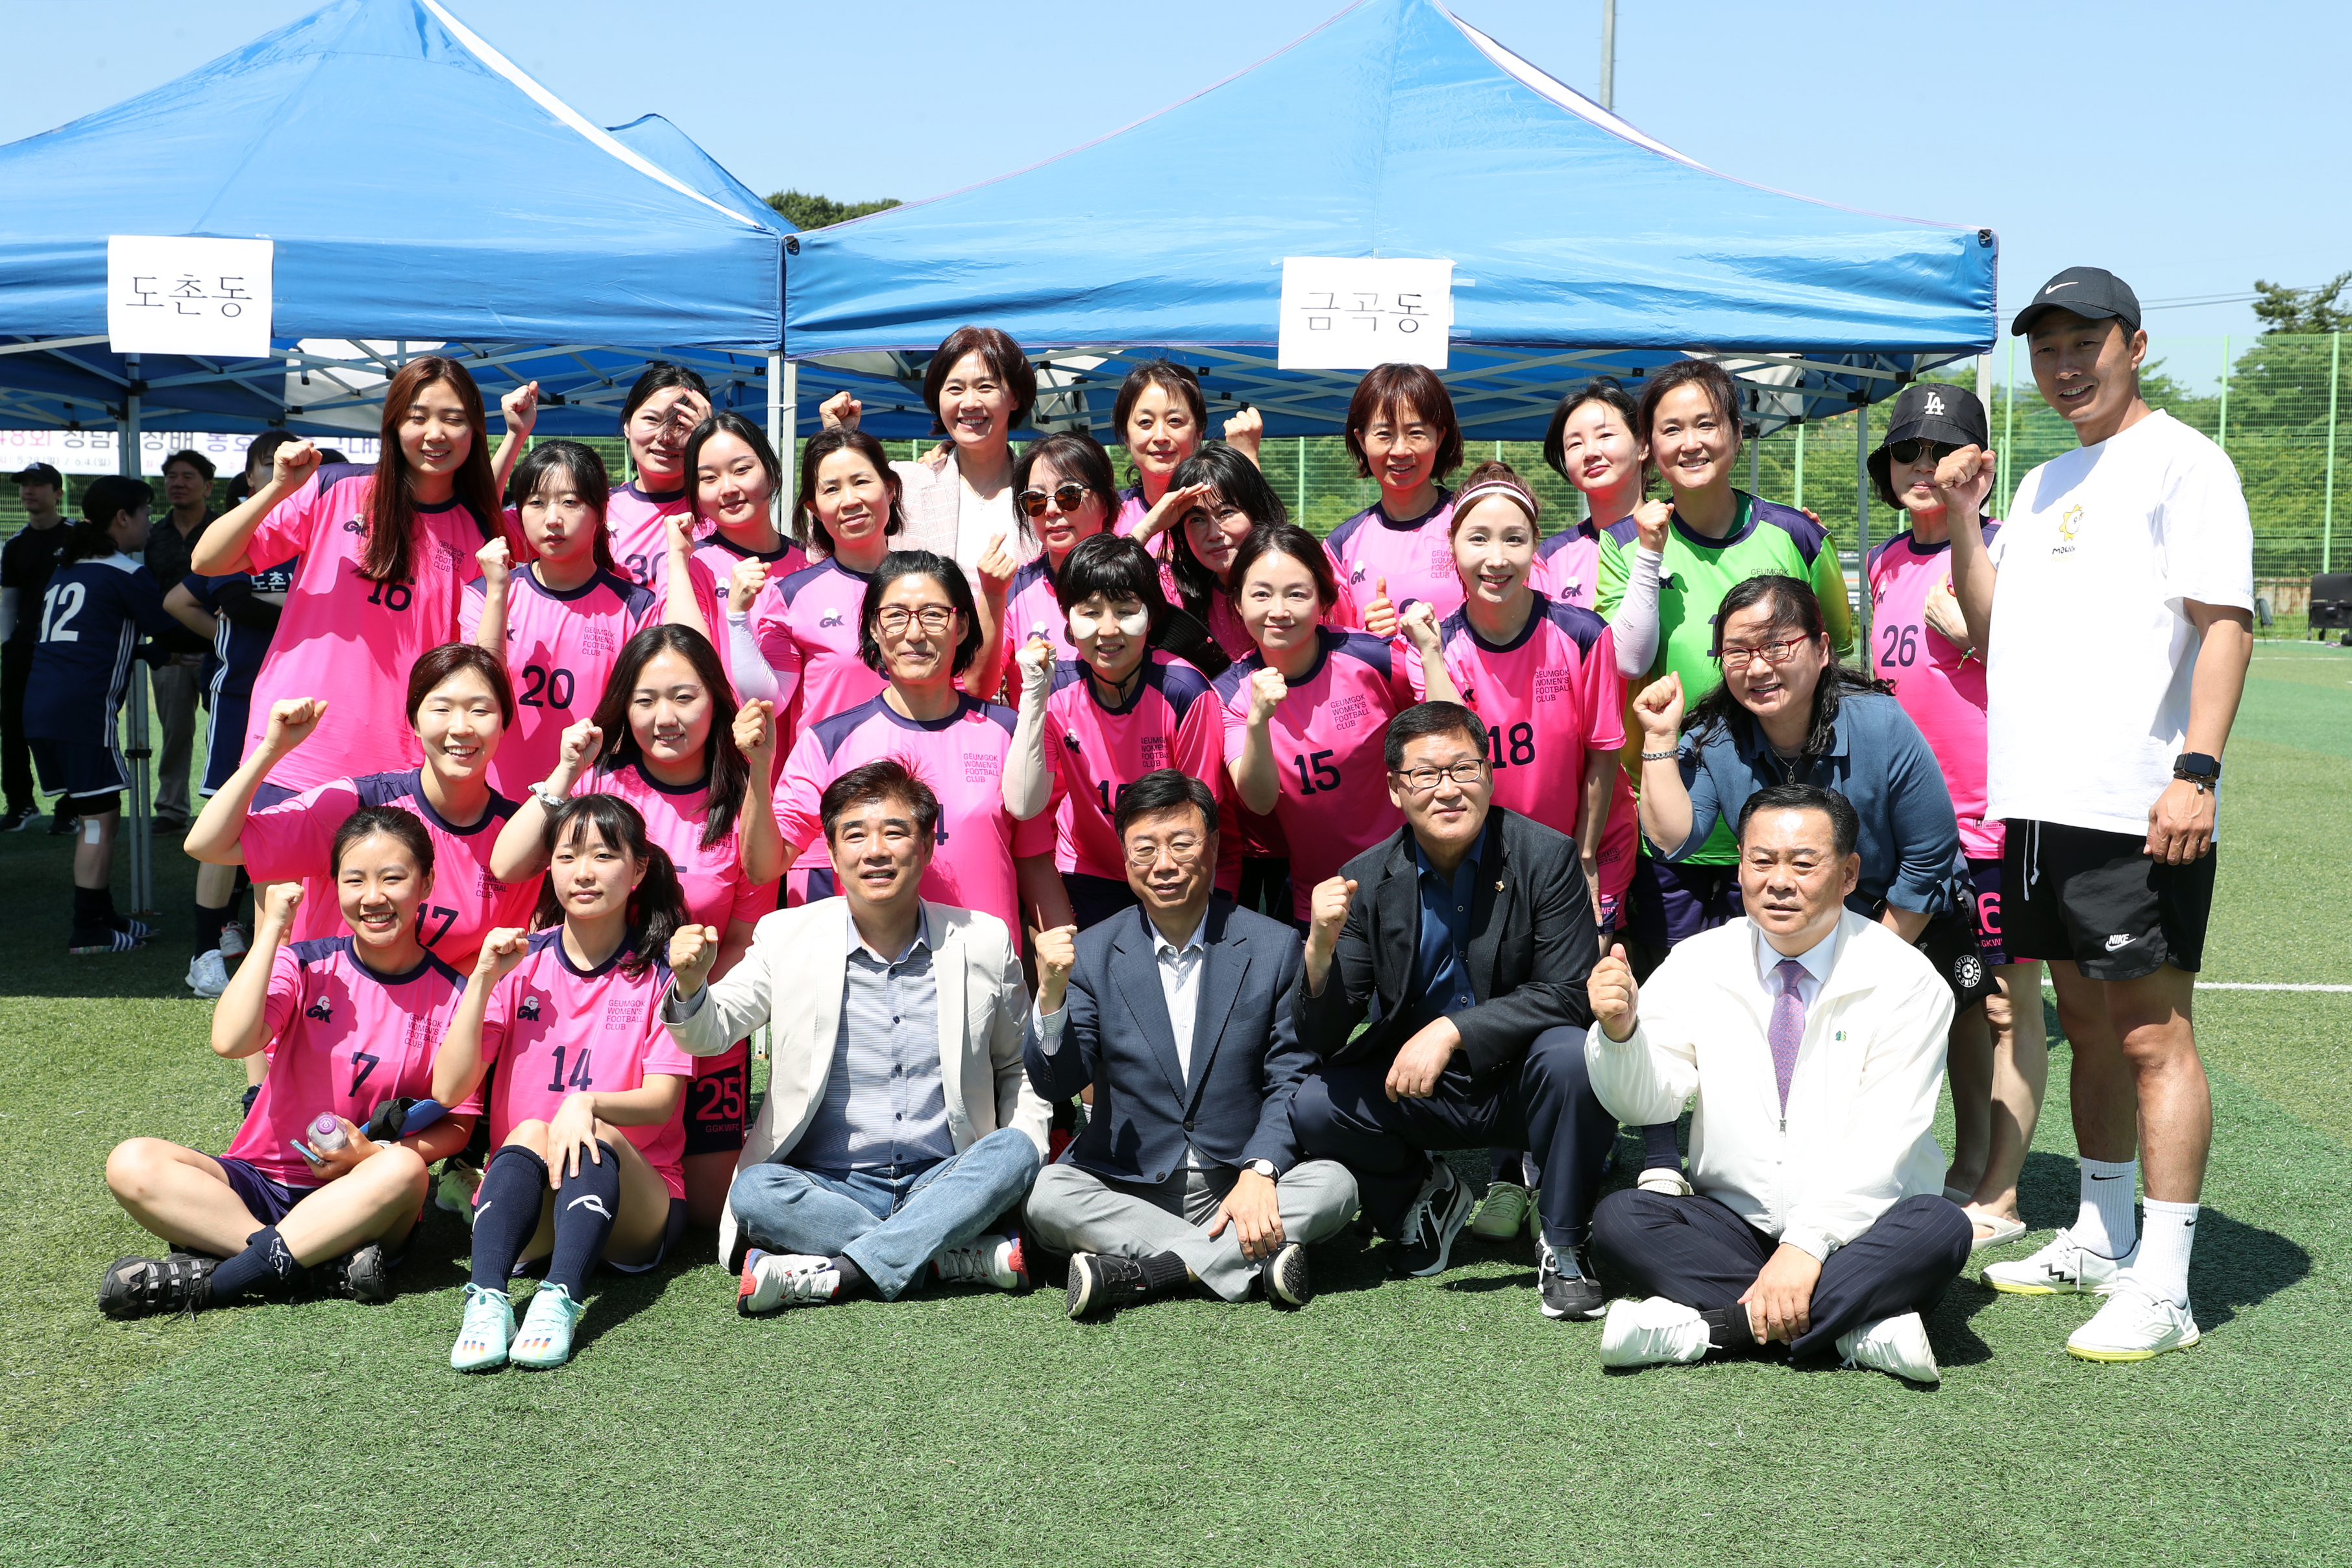 성남시 생활체육 여성축구단 자체리그전 - 3